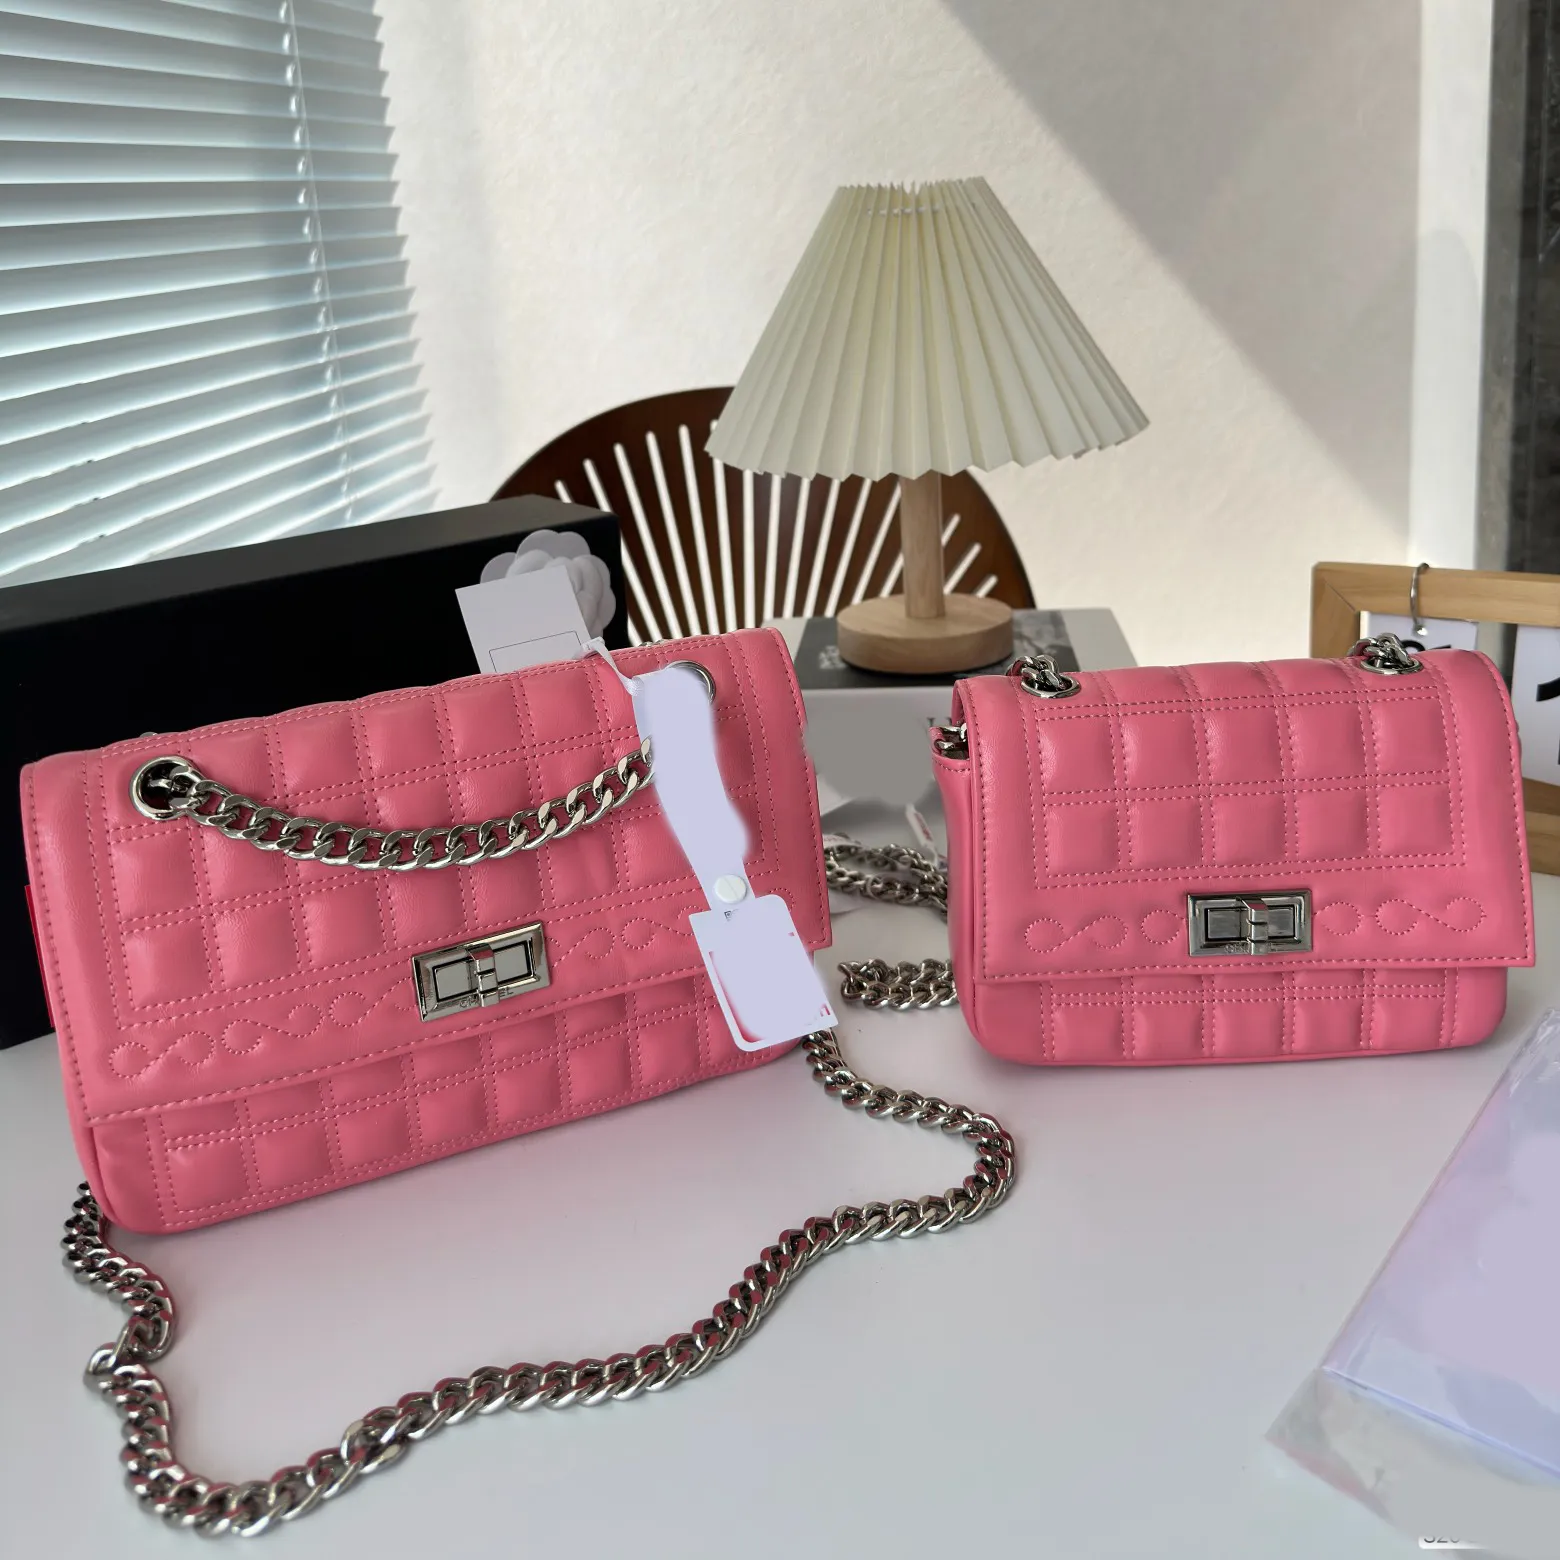 플랩 가방 체인 가방 럭셔리 디자이너 브랜드 패션 어깨 가방 새로운 핸드백 고품질 여성 편지 지갑 전화 가방 지갑 금속 레이디